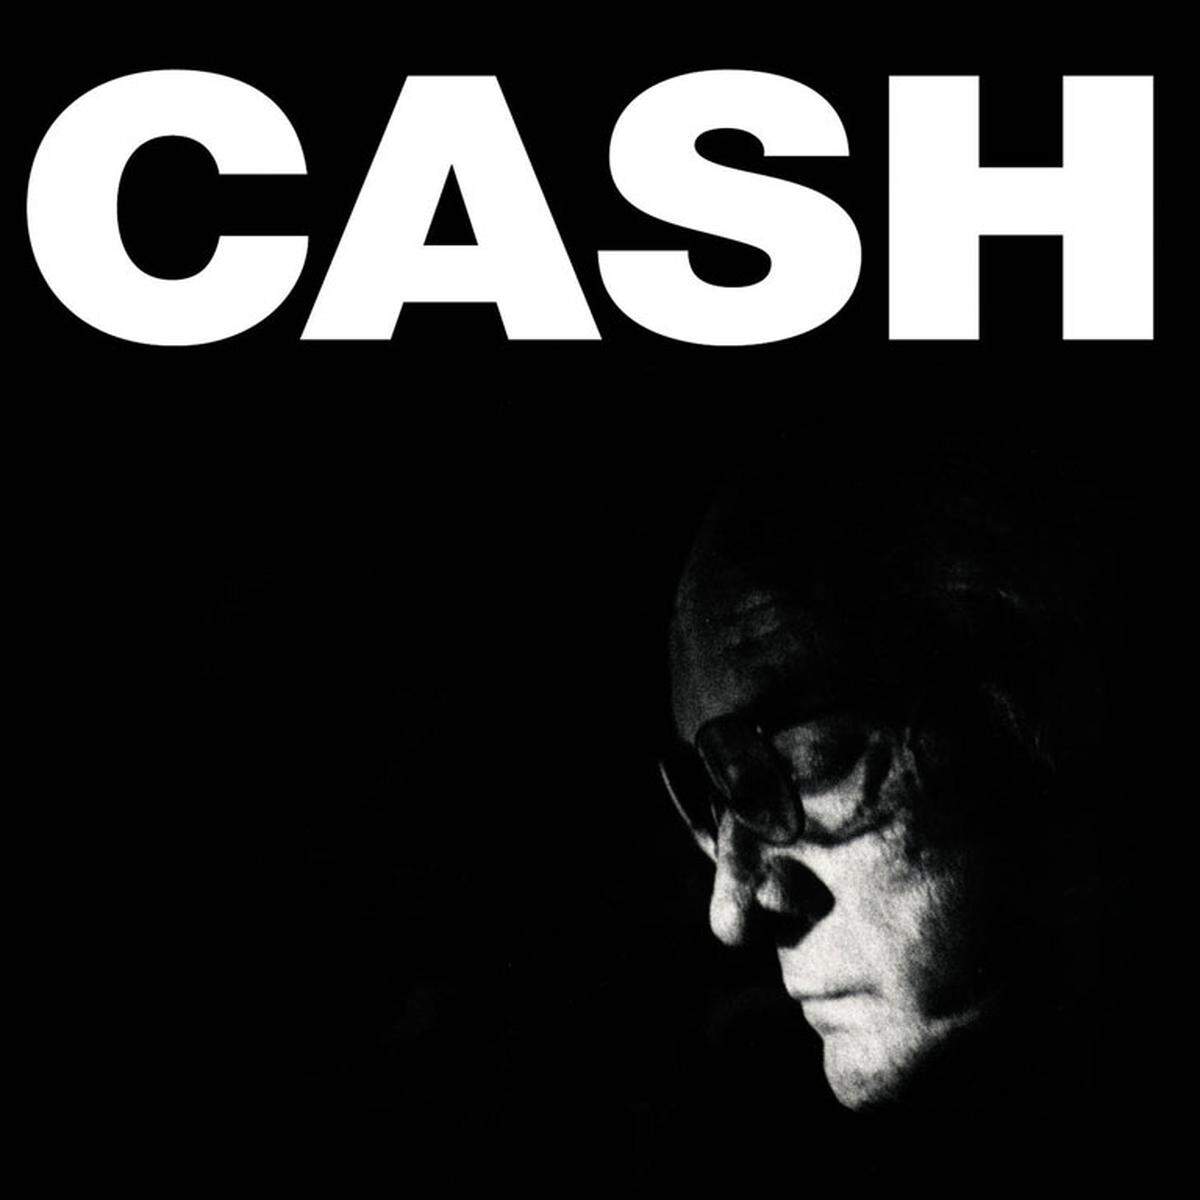 Johnny Cashs letztes Album vor seinem Tod war wohl das emotionalste: "The Man Comes Around" (2002) enthält das Nine Inch-Nails Cover "Hurt" und Vera Lynns "We'll Meet Again".